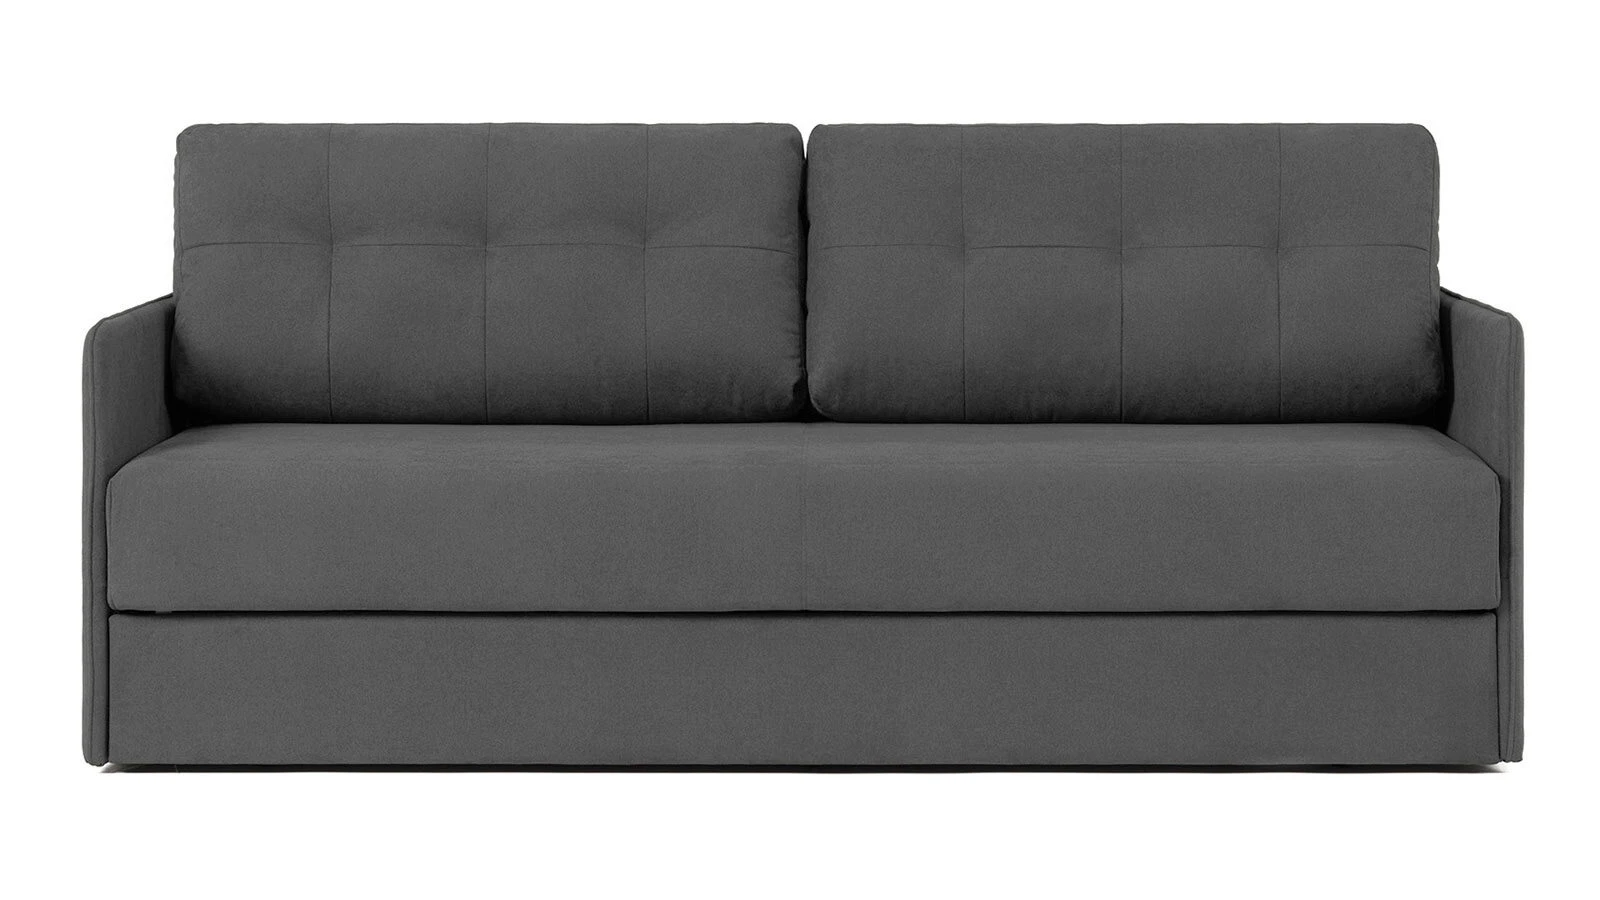 Купить диван с доставкой в Москве - каталог анатомических диван-кроватей соспальным местом от производителя Аскона